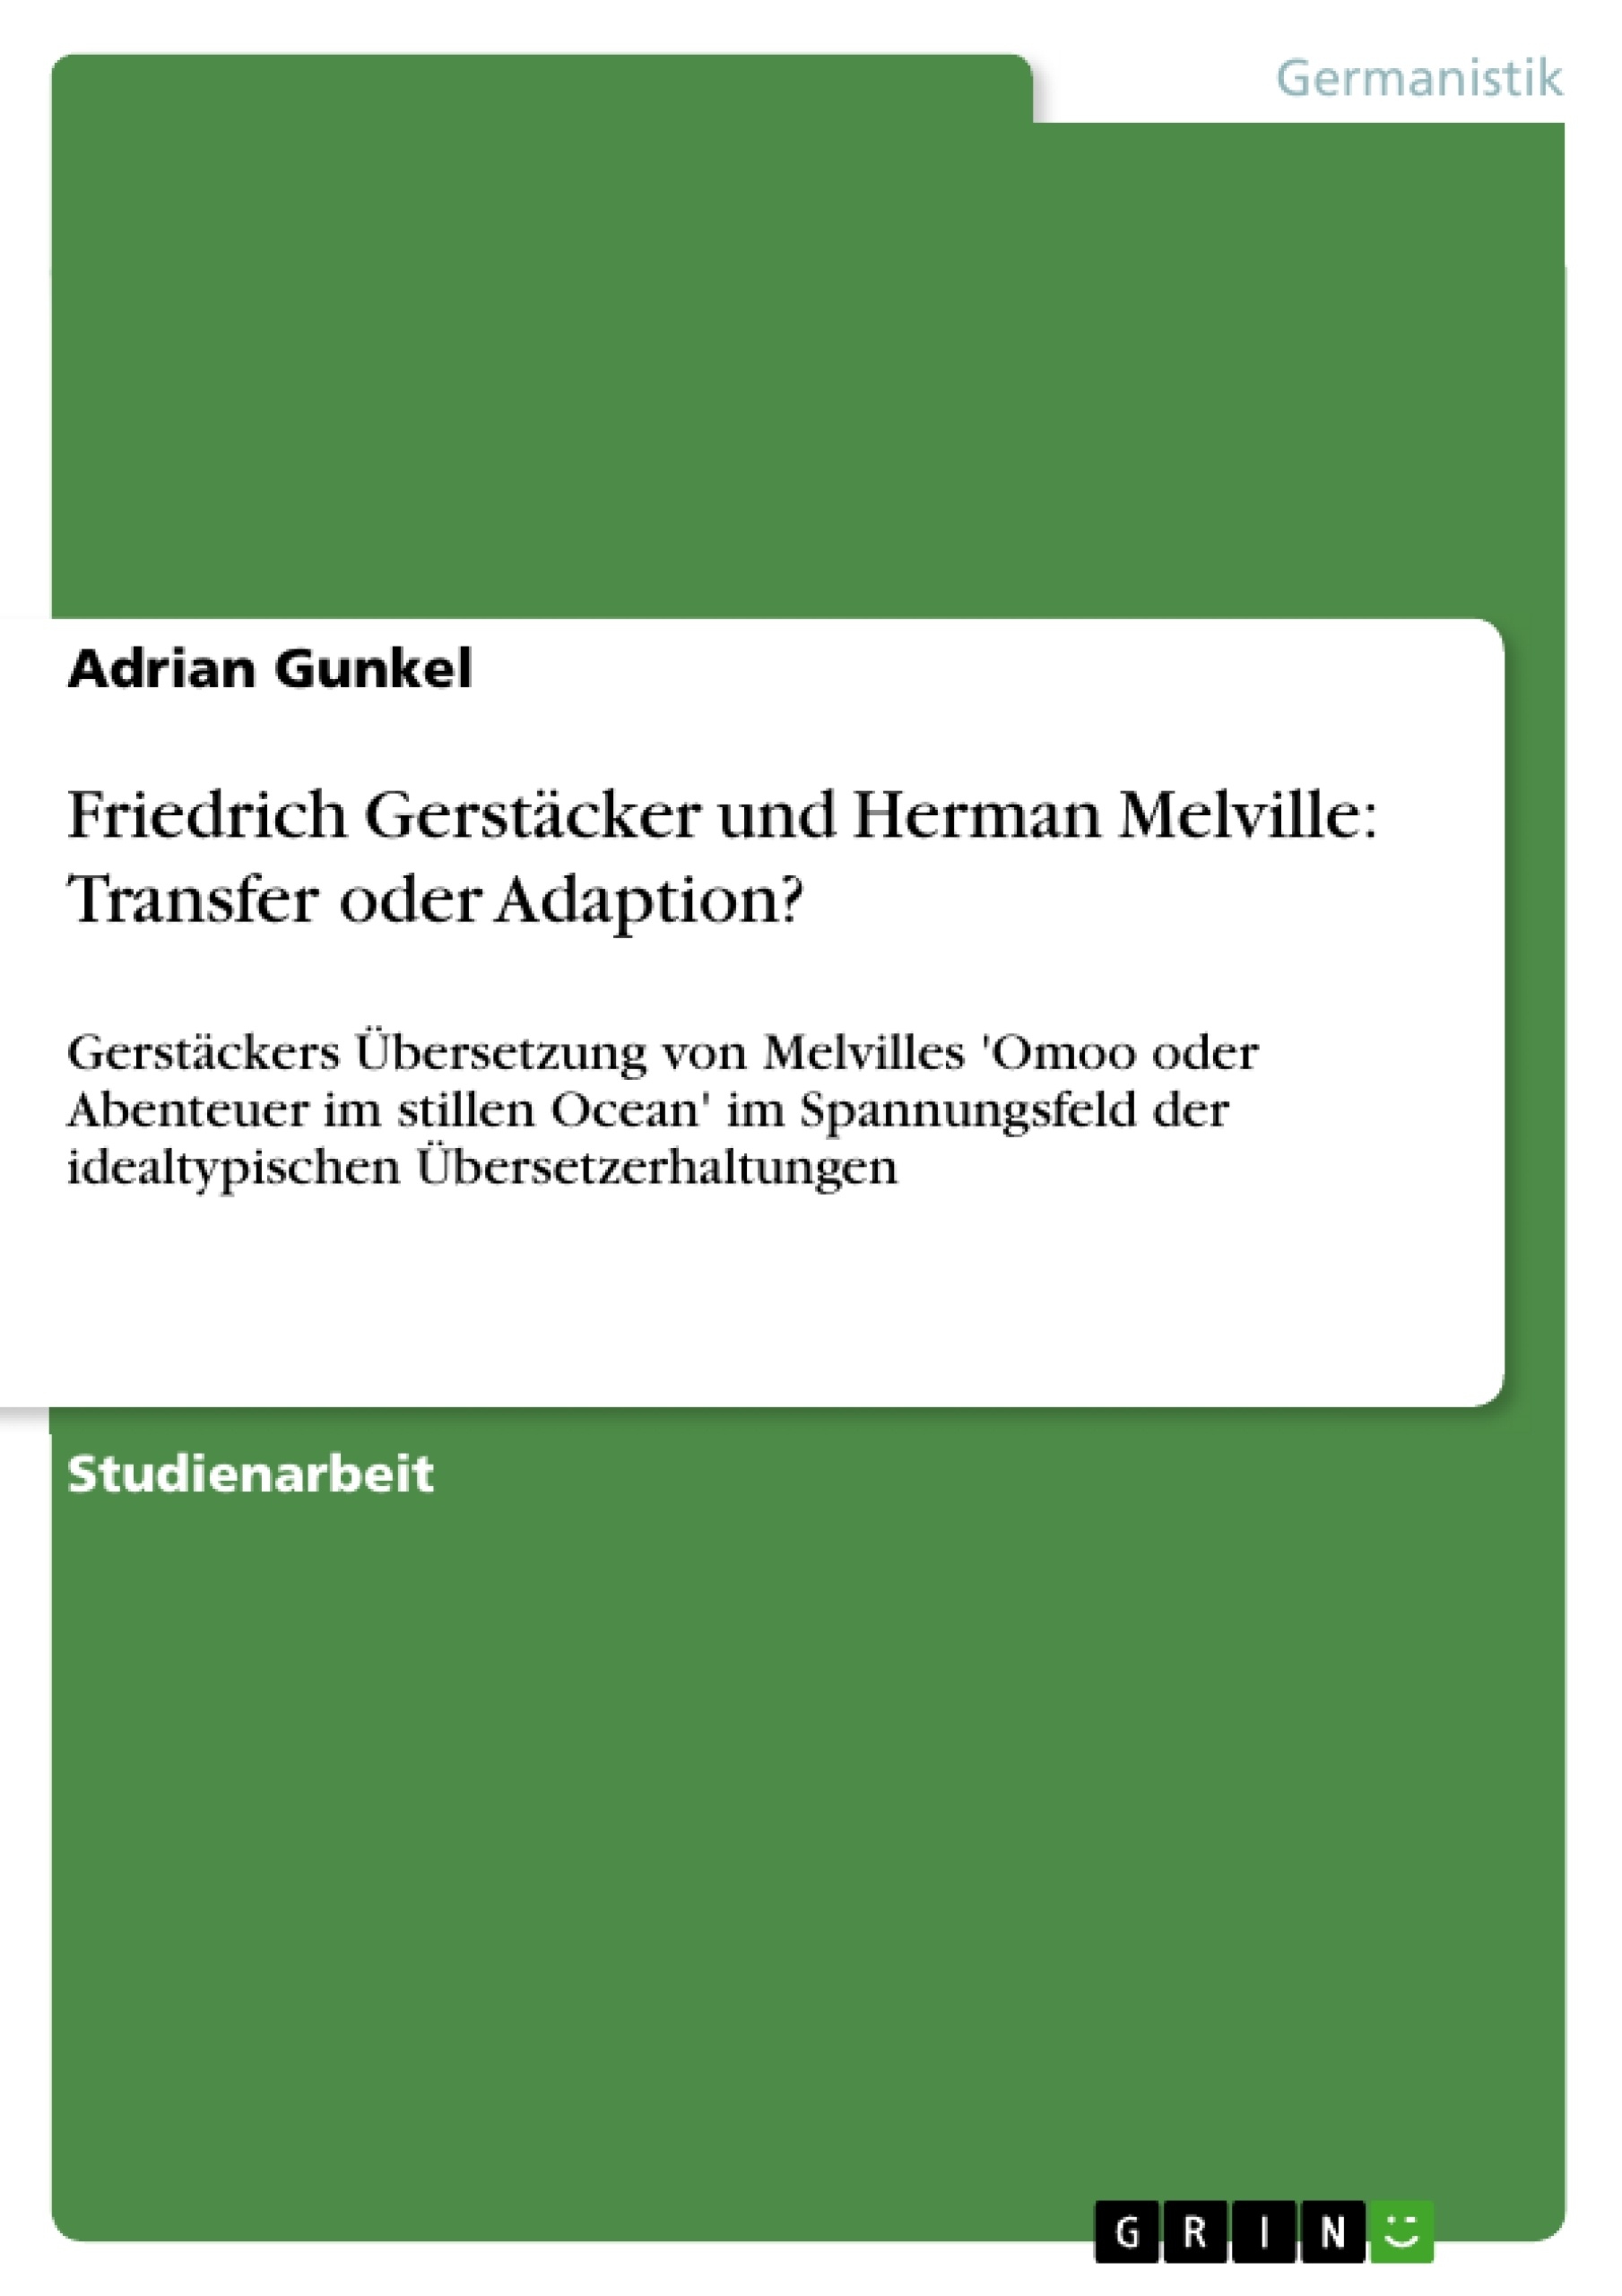 Título: Friedrich Gerstäcker und Herman Melville: Transfer oder Adaption?